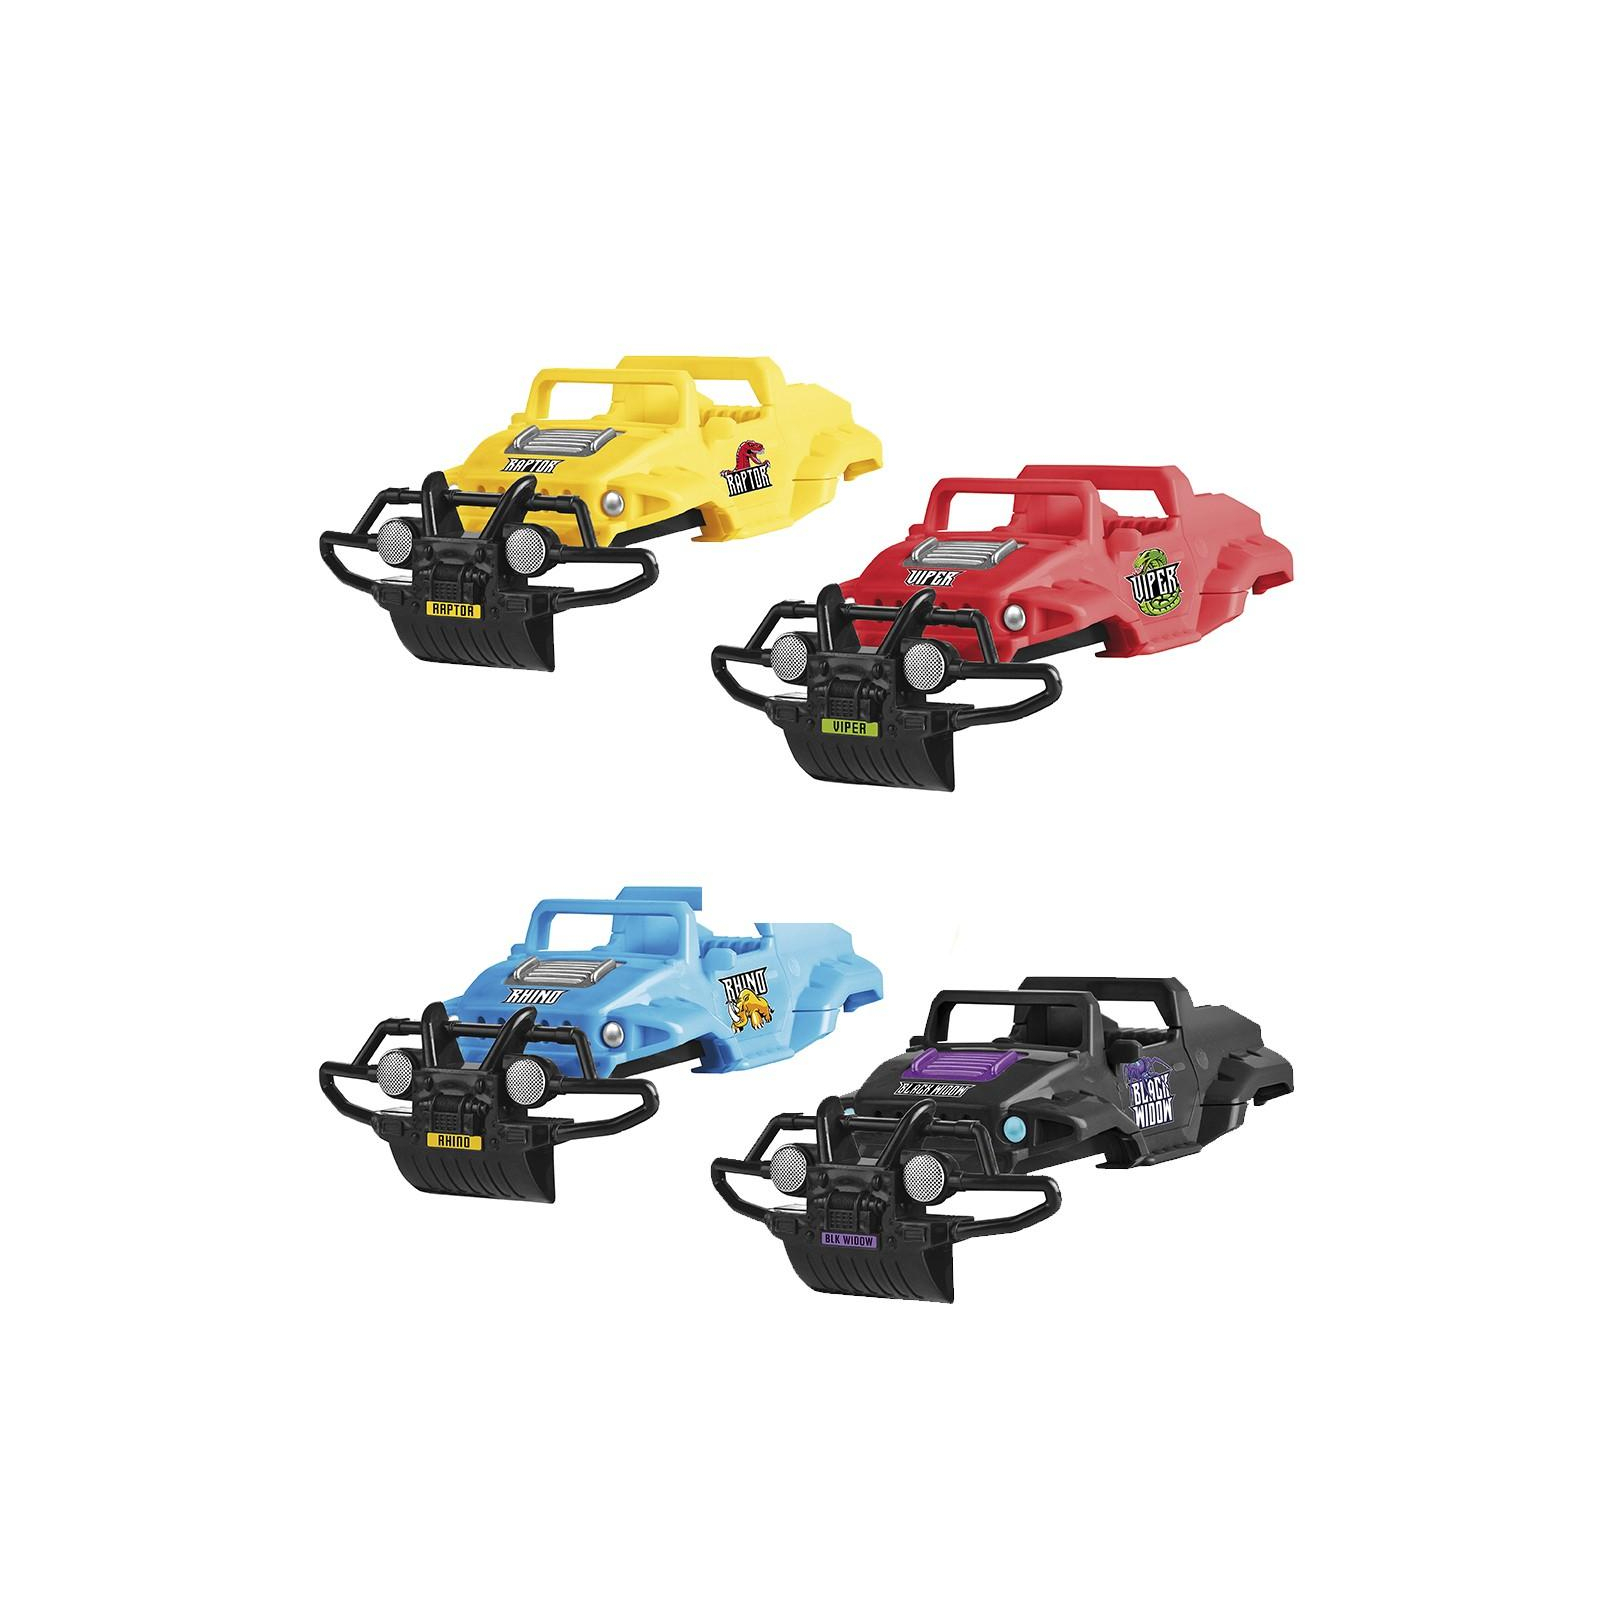 Радиоуправляемая игрушка Monster Smash-Ups CRASH CAR на р/у – БИТВА КОМАНД 2 модели, 4 корпуса, аккум. (TY6007) изображение 2